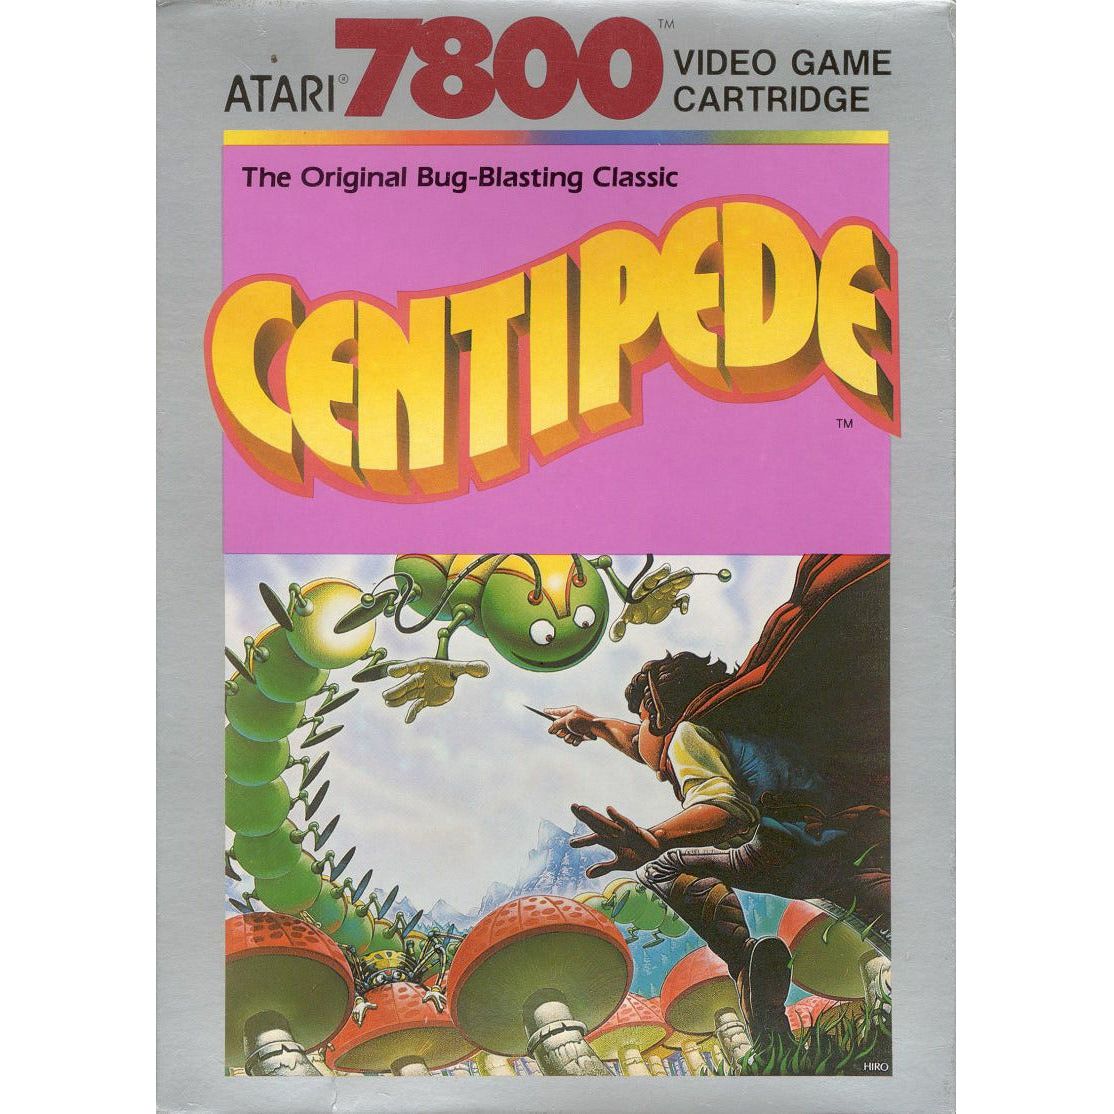 Atari 7800 - Centipede (Complete in Box)